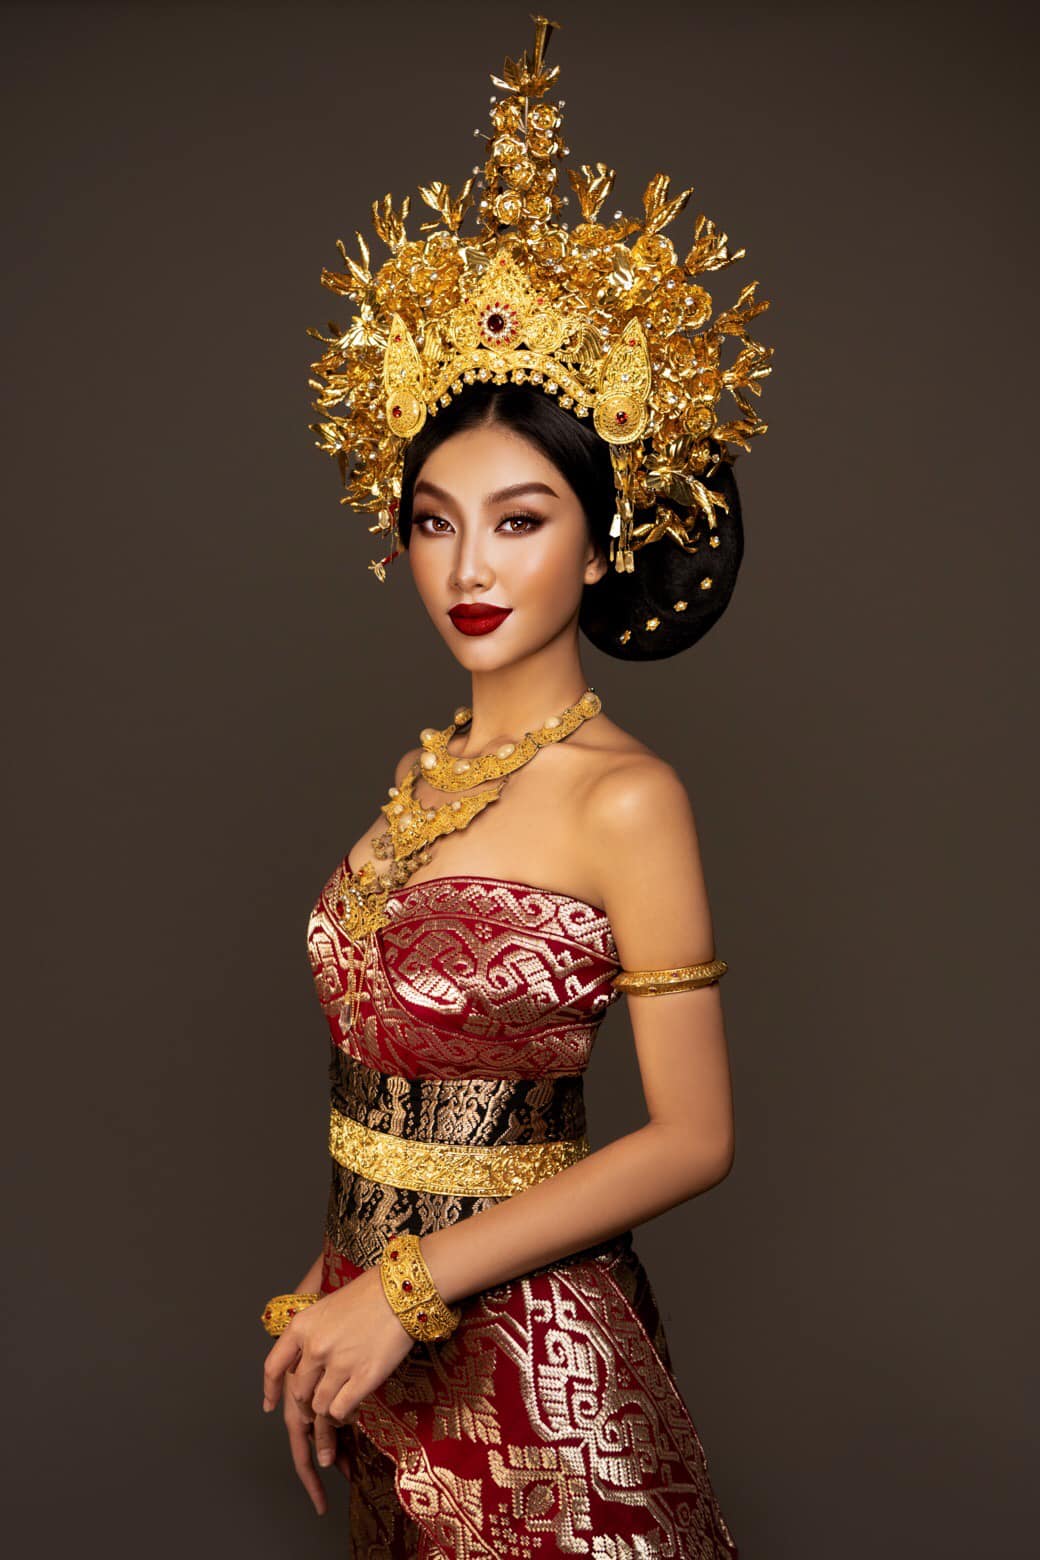 Sau đêm đăng quang, Thùy Tiên từng xuất hiện trong nhiều bộ trang phục truyền thống từ các nước như Thái Lan, Indonesia, Colombia...